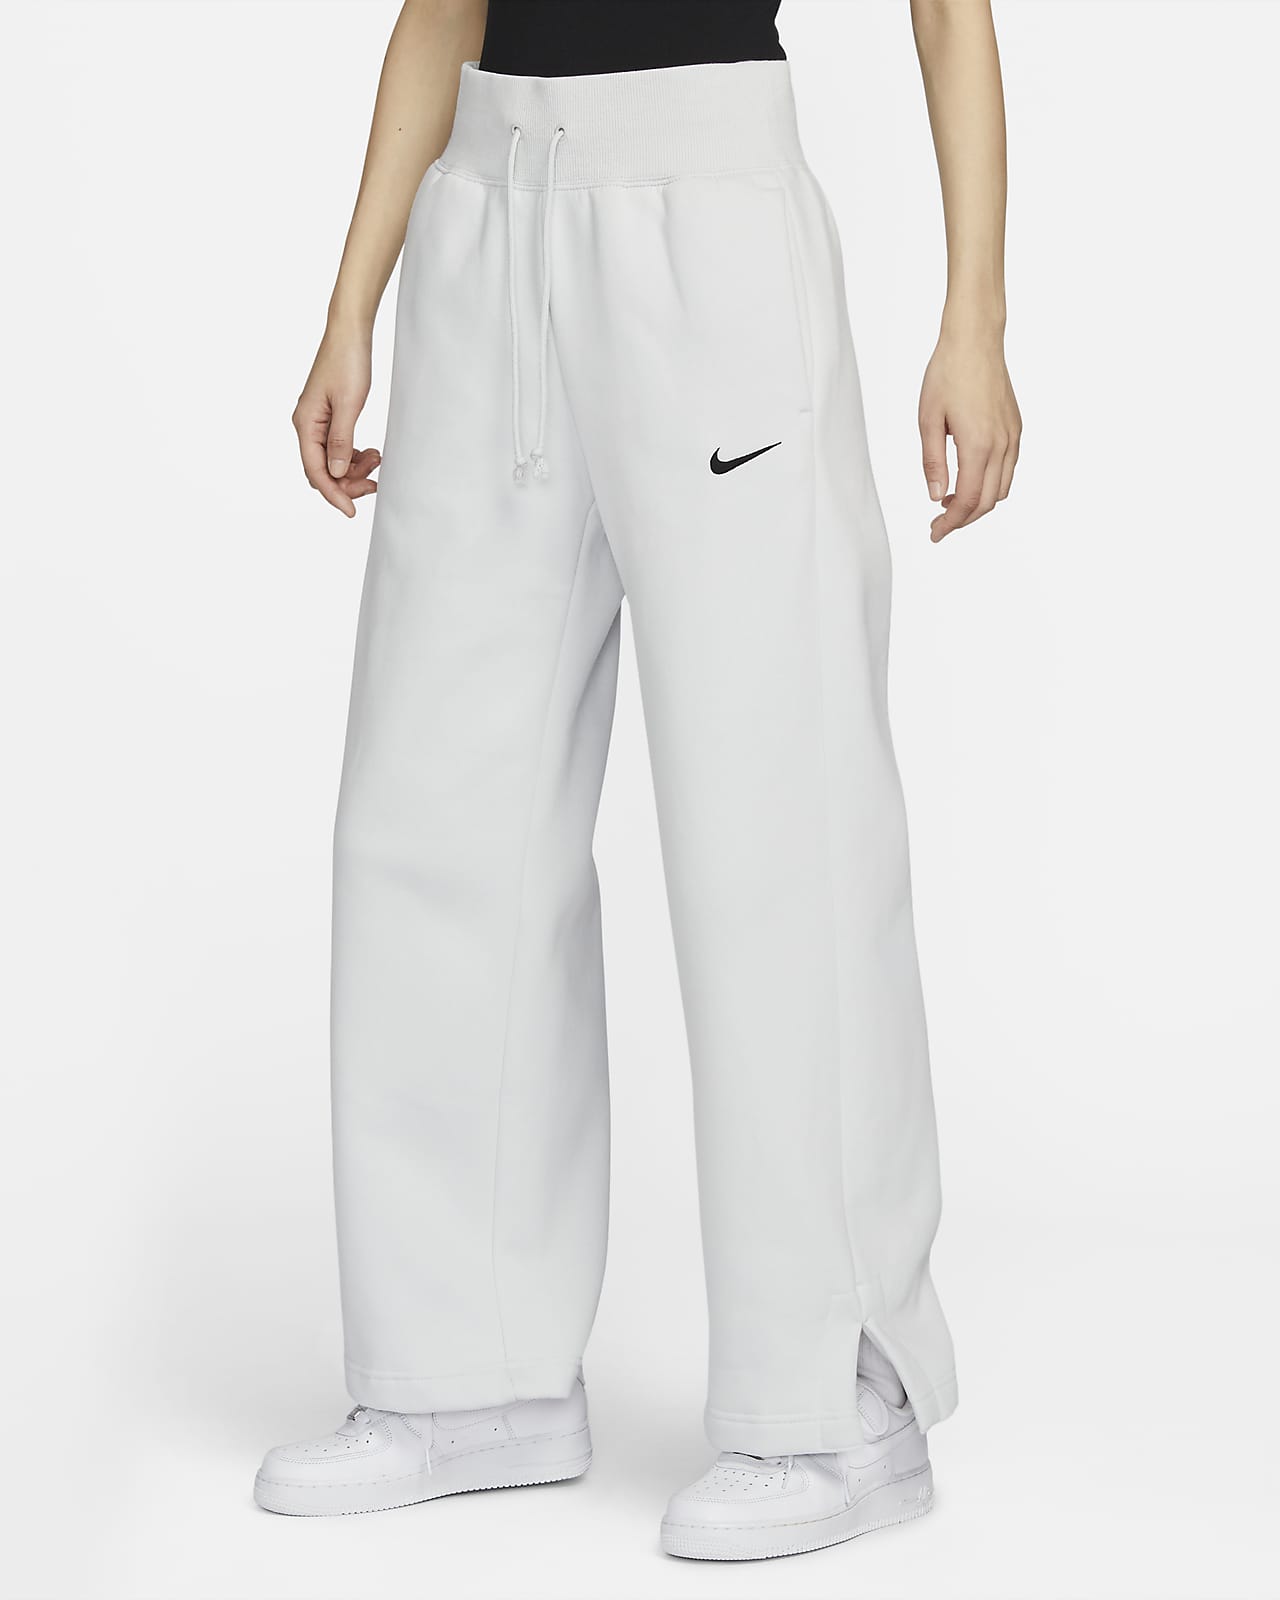 Nike Sportswear Phoenix Fleece 女款高腰寬褲管運動褲